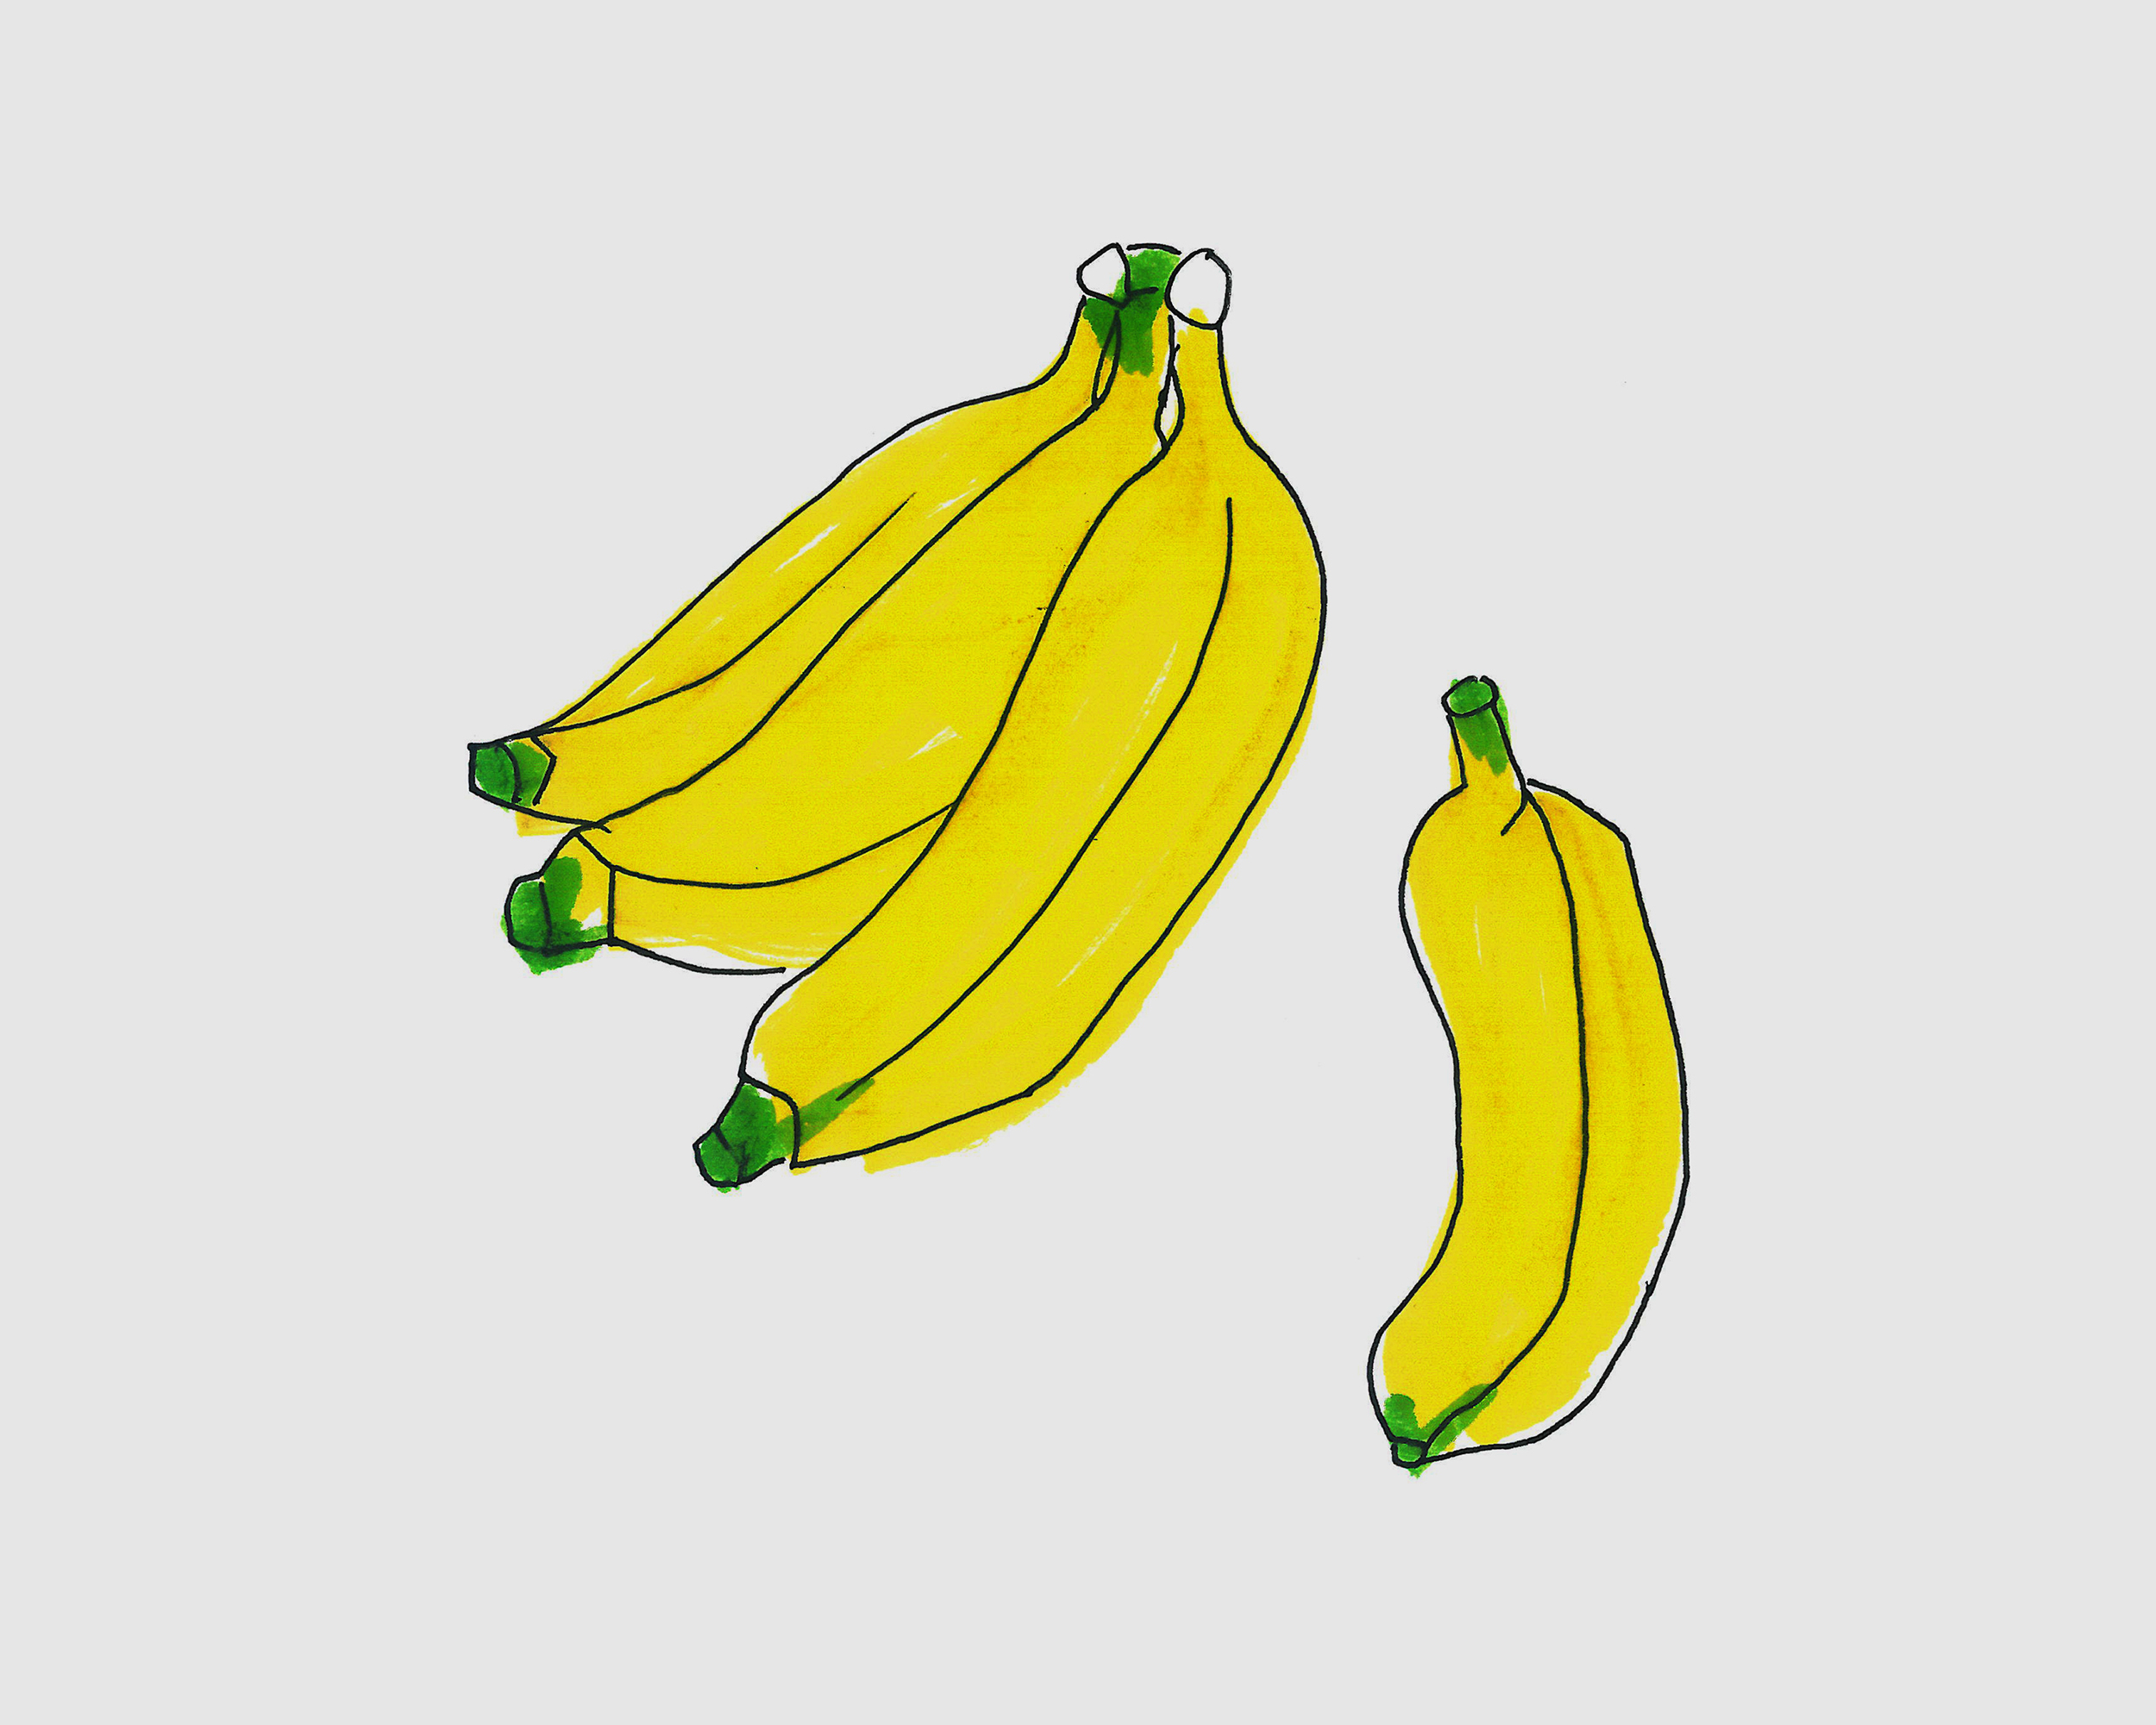 香蕉的图片简笔画 香蕉的图片简笔画图片大全动漫 | 第 2 页